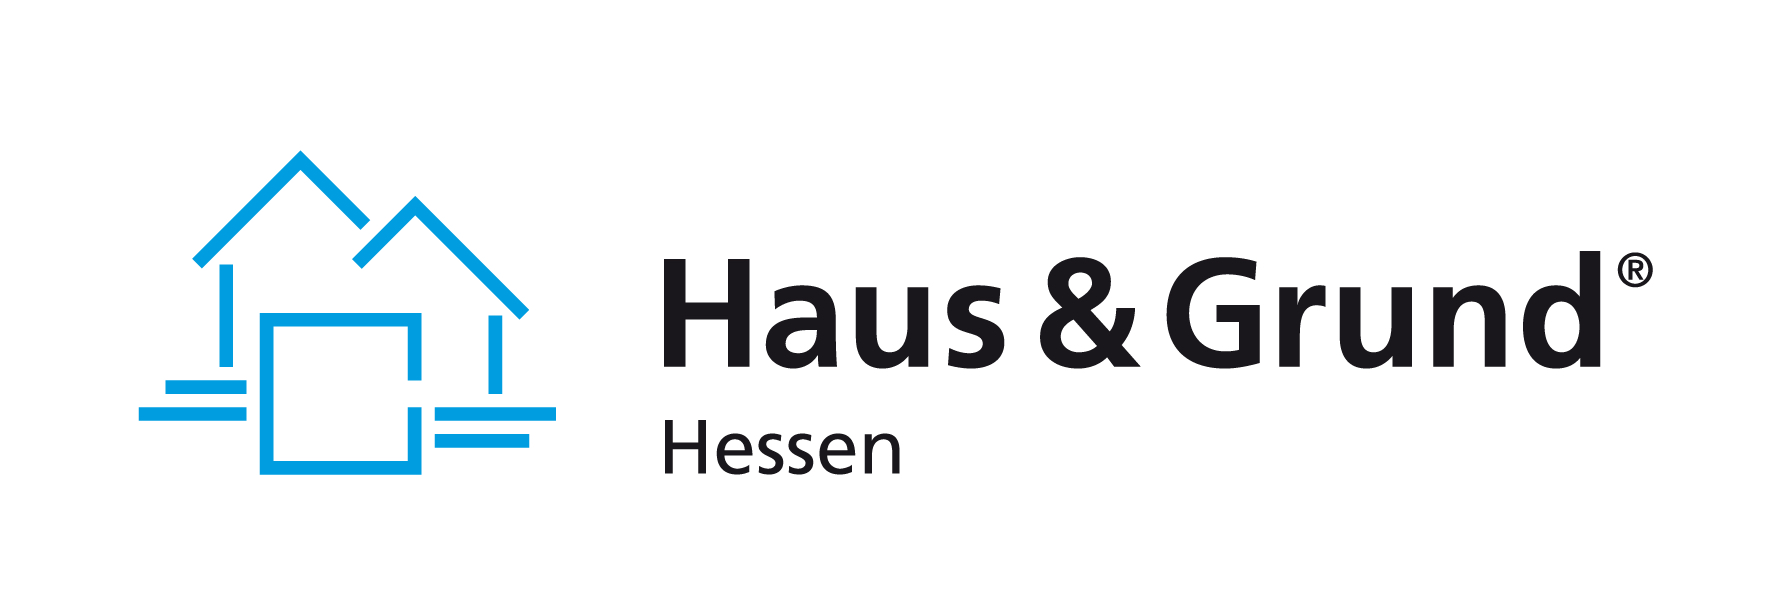 Haus & Grund Hessen: Steuerliche Erleichterungen helfen Vermietern